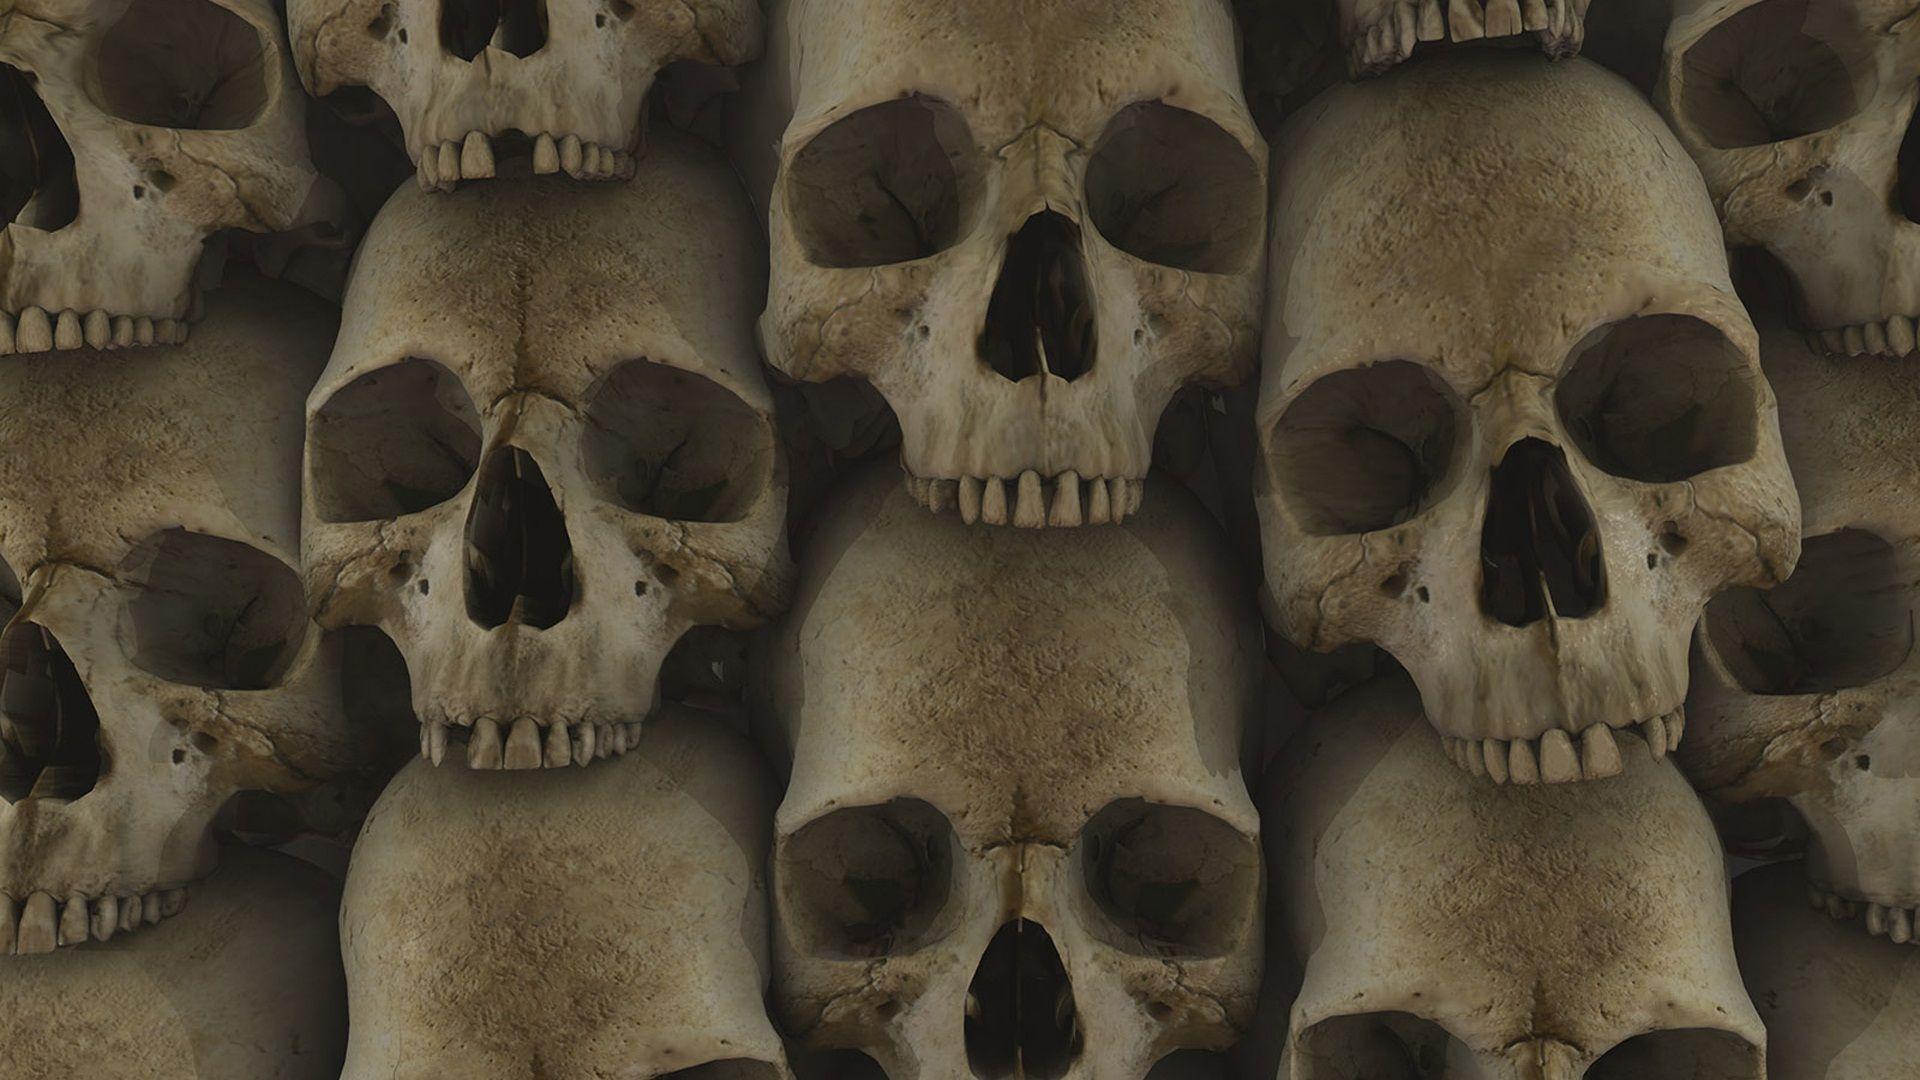 Skulls HD Wallpapers - Wallpaper Cave 3d Skull Wallpaper Hd